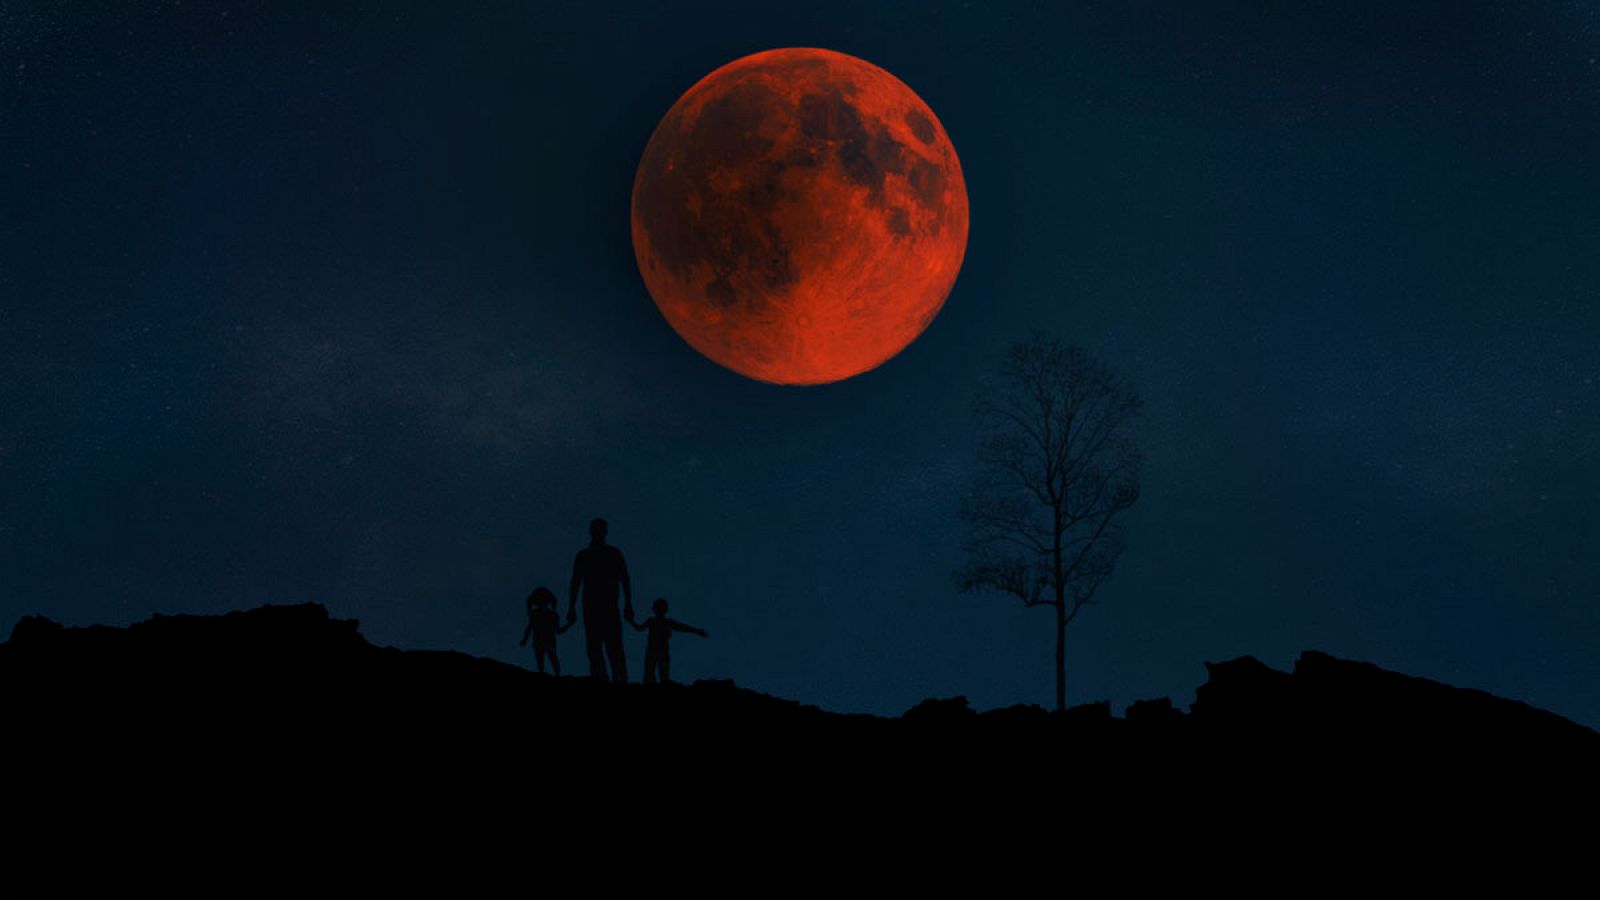 Para observar mejor el eclipse de luna, hay que hacerlo en zonas altas y sin contaminación lumínica.